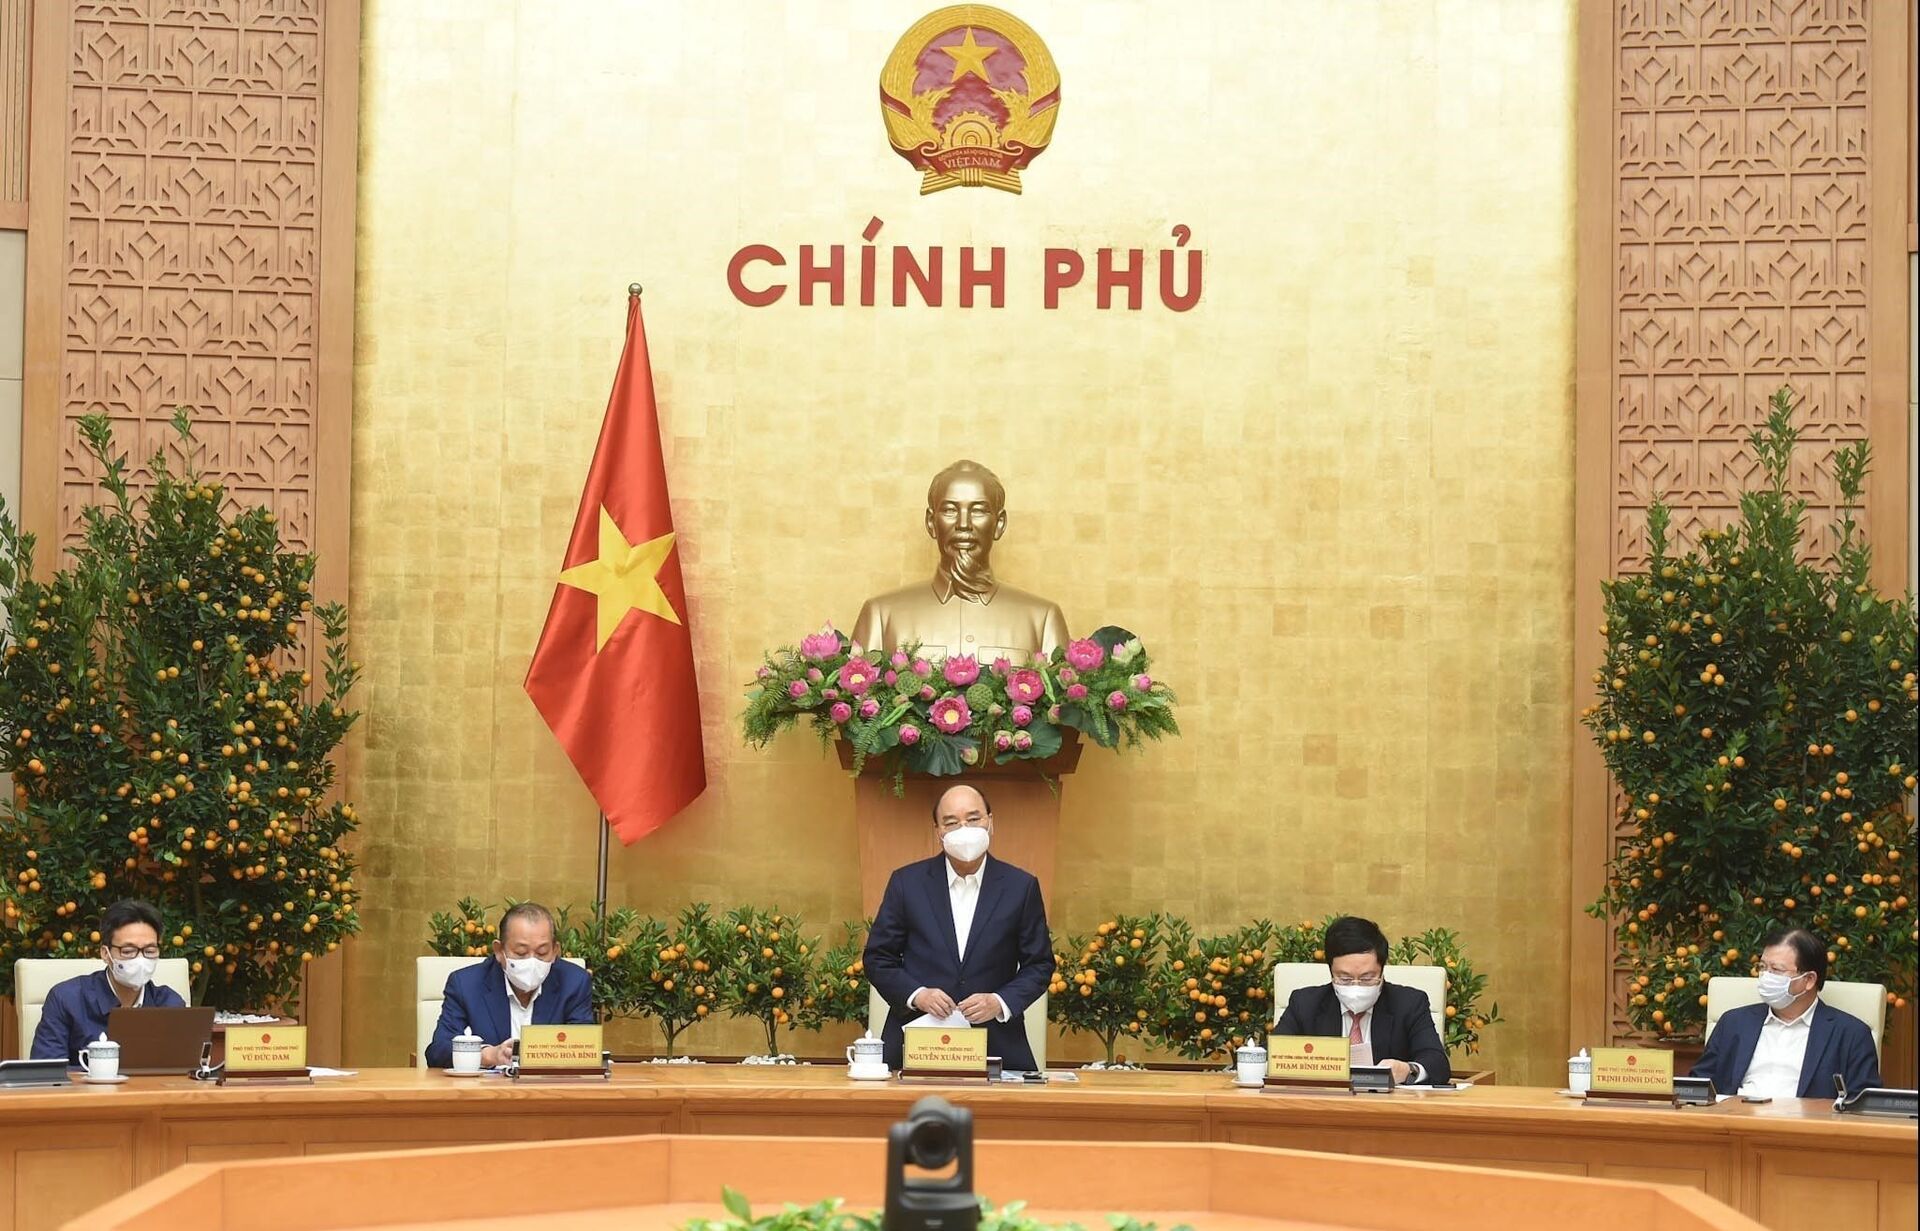 Dịch Covid-19 ở Việt Nam: Thủ tướng đồng ý giãn cách xã hội ở một số địa bàn có lây nhiễm - Sputnik Việt Nam, 1920, 08.02.2021